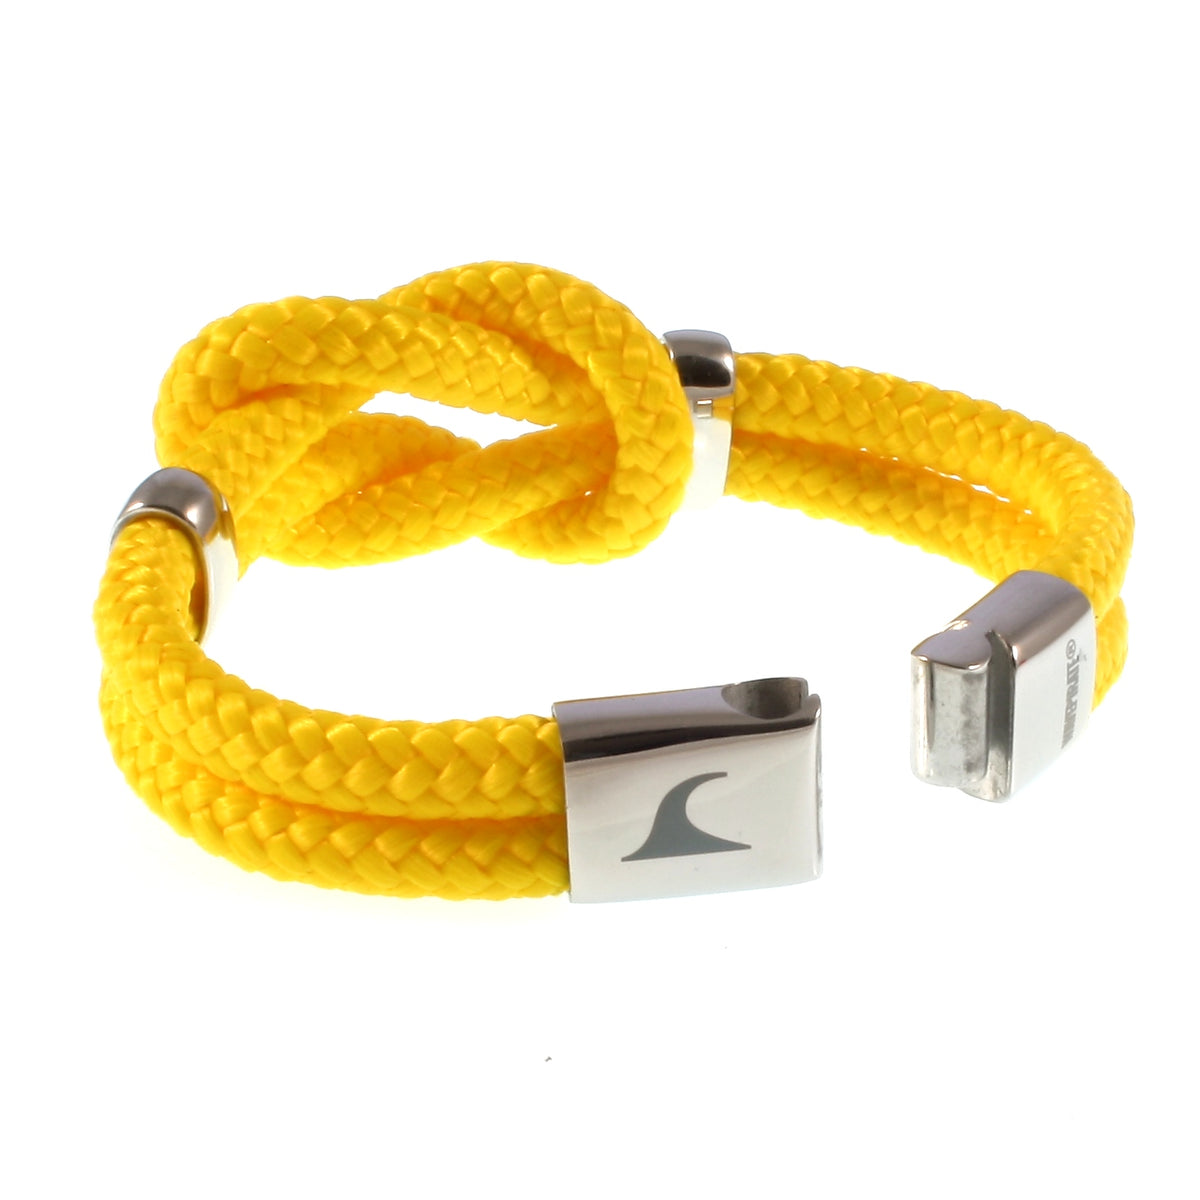 Damen-Segeltau-armband-pure-gelb-silber-geflochten-Edelstahlverschluss-offen-wavepirate-shop-st